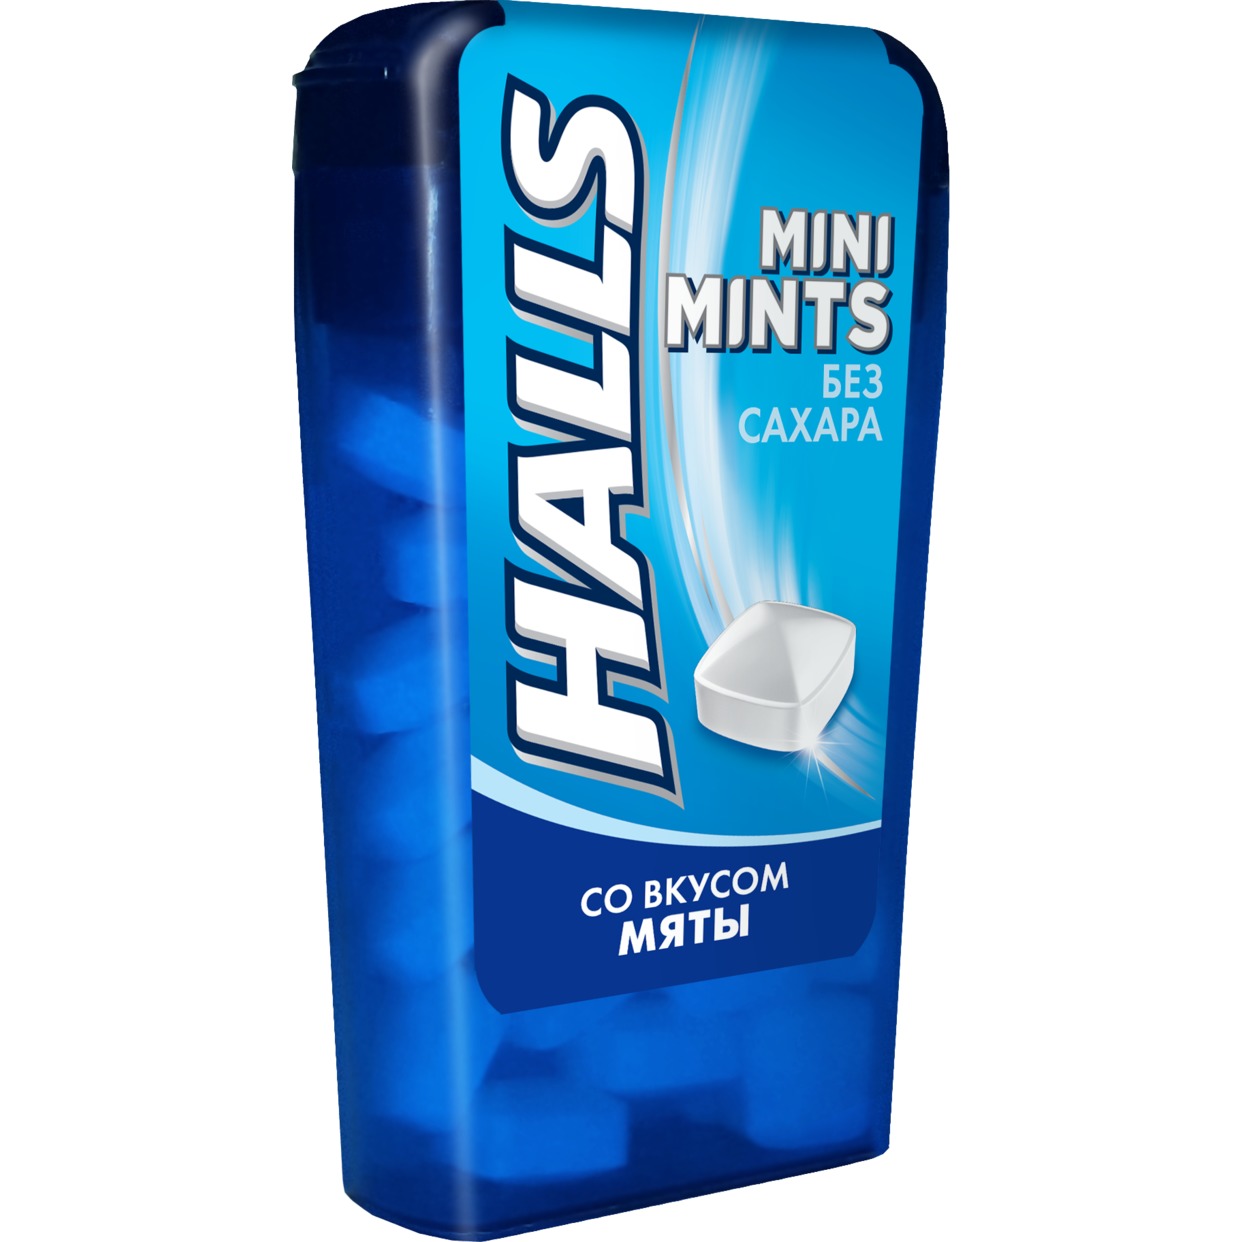 Конфеты Halls Mini Mints со вкусом мяты без сахара 12.5г